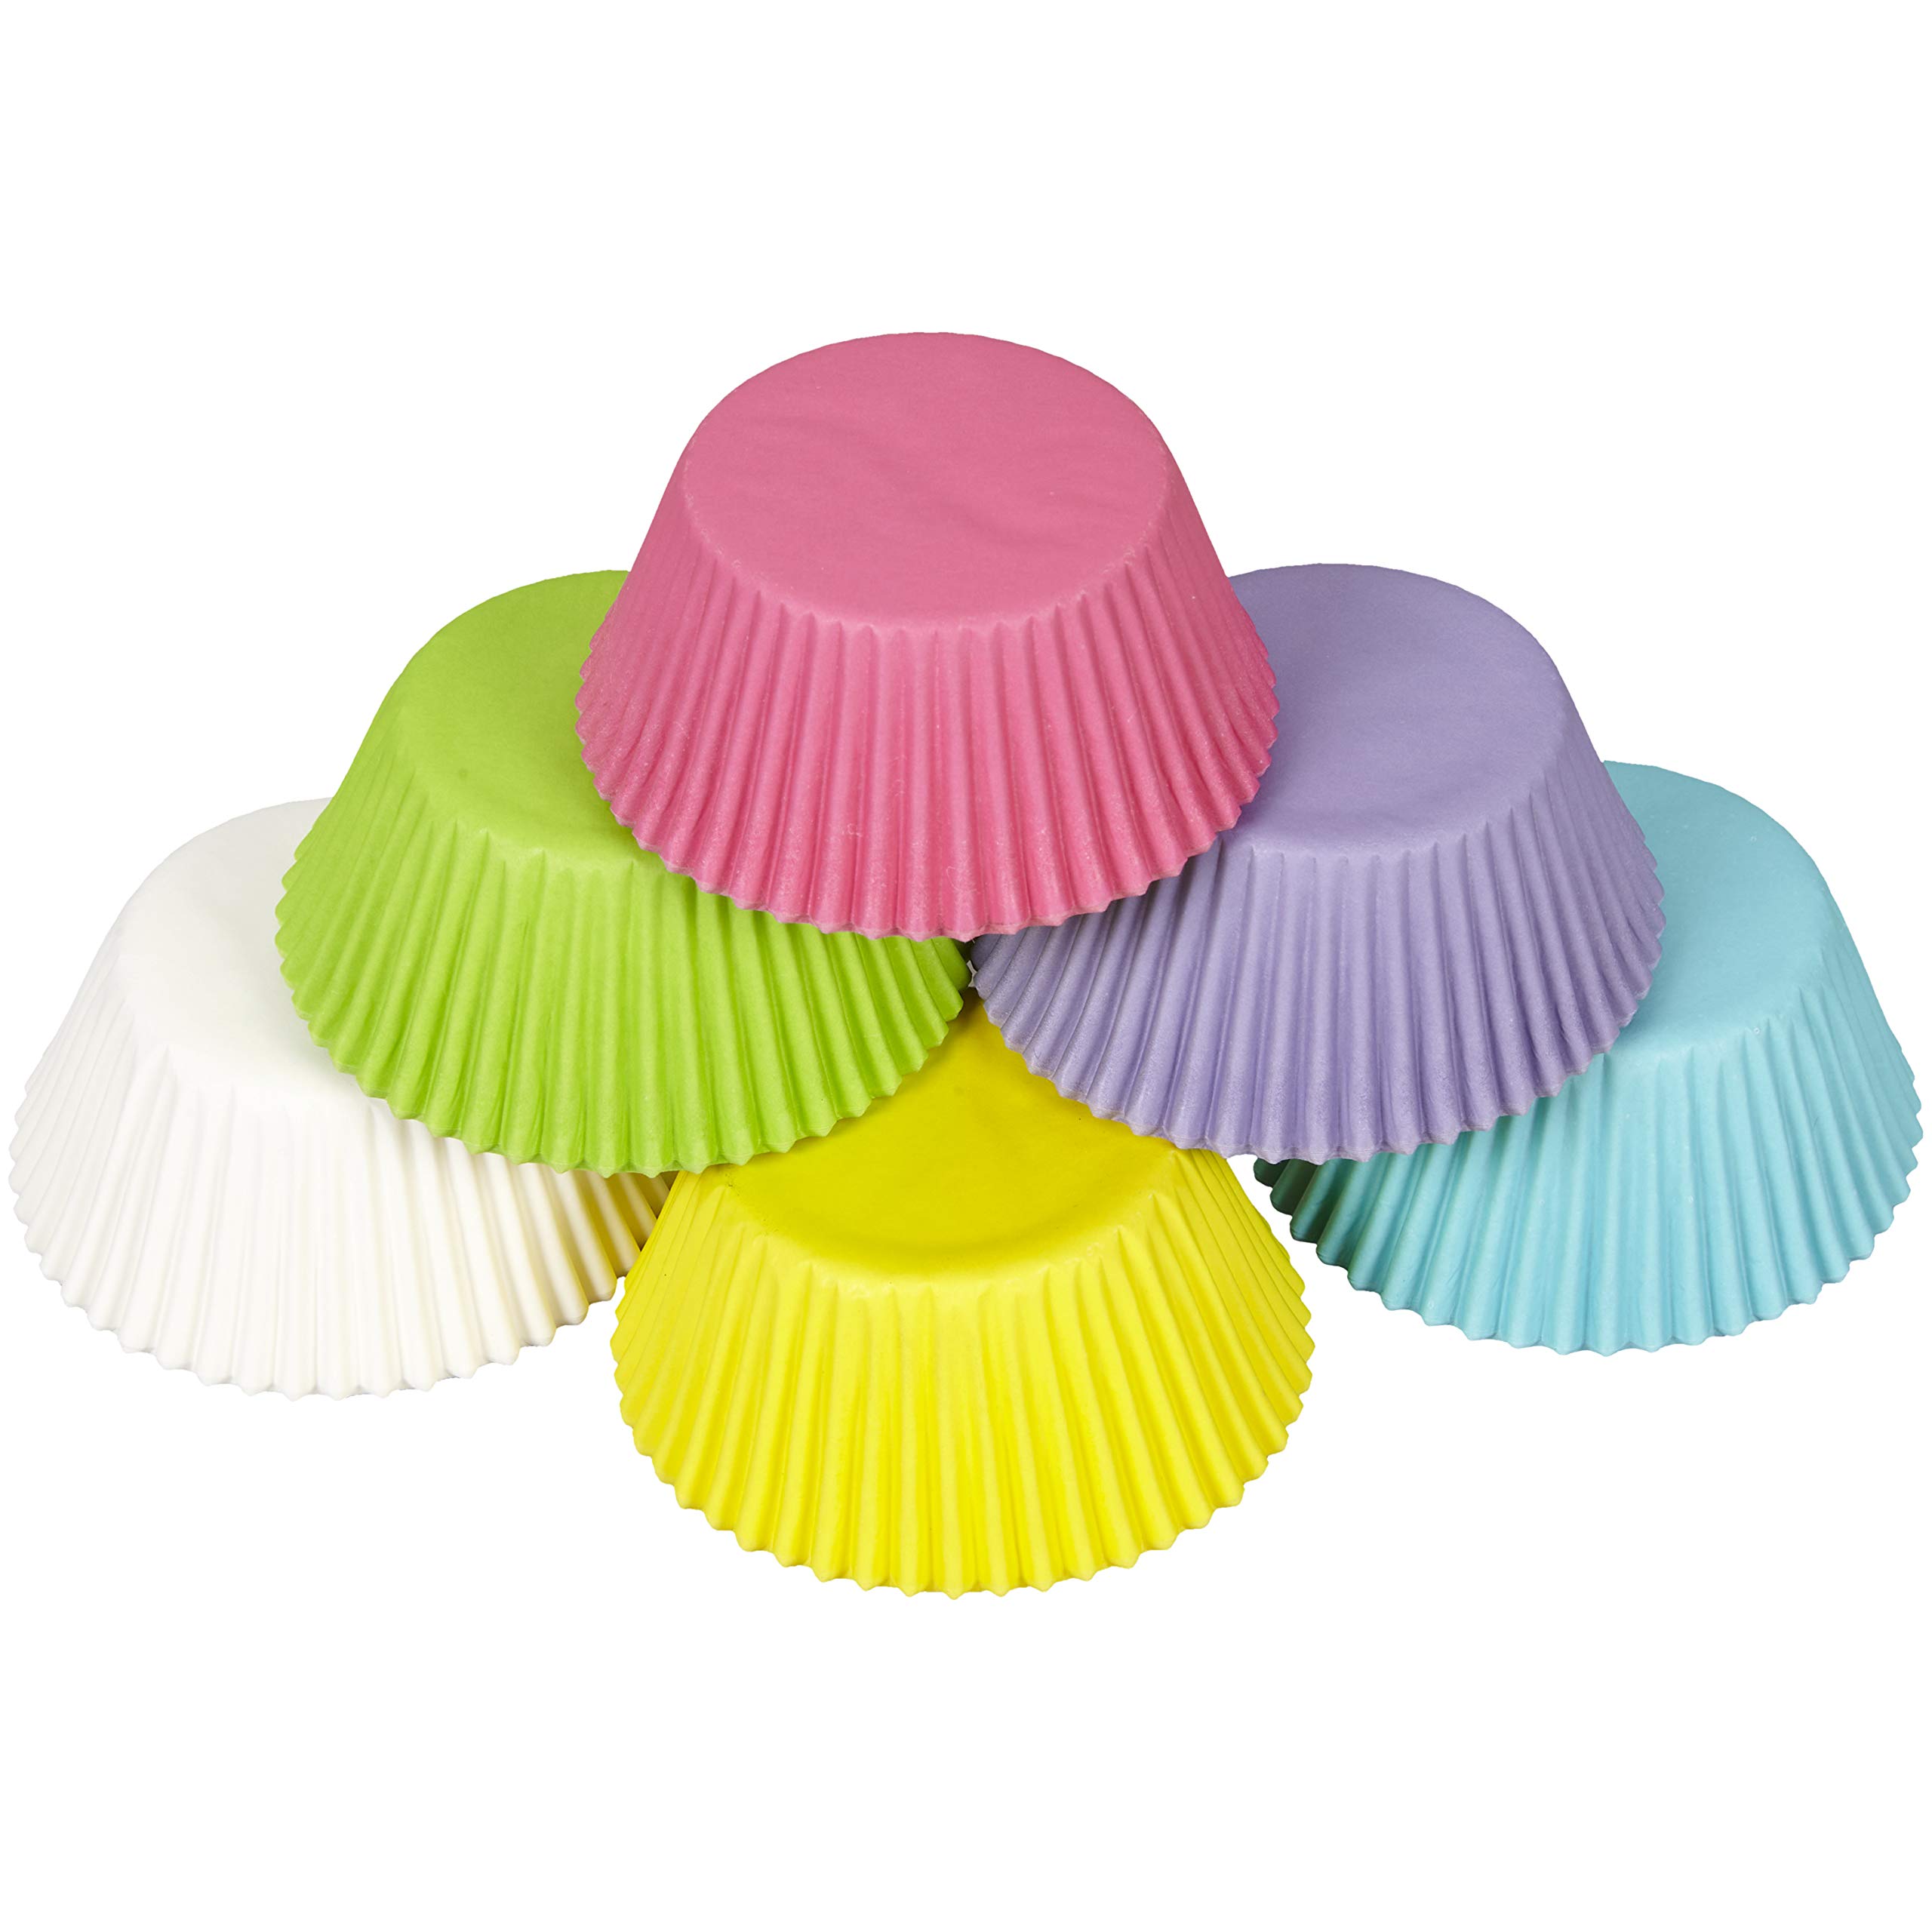 Wilton Bakecups, Multicolor